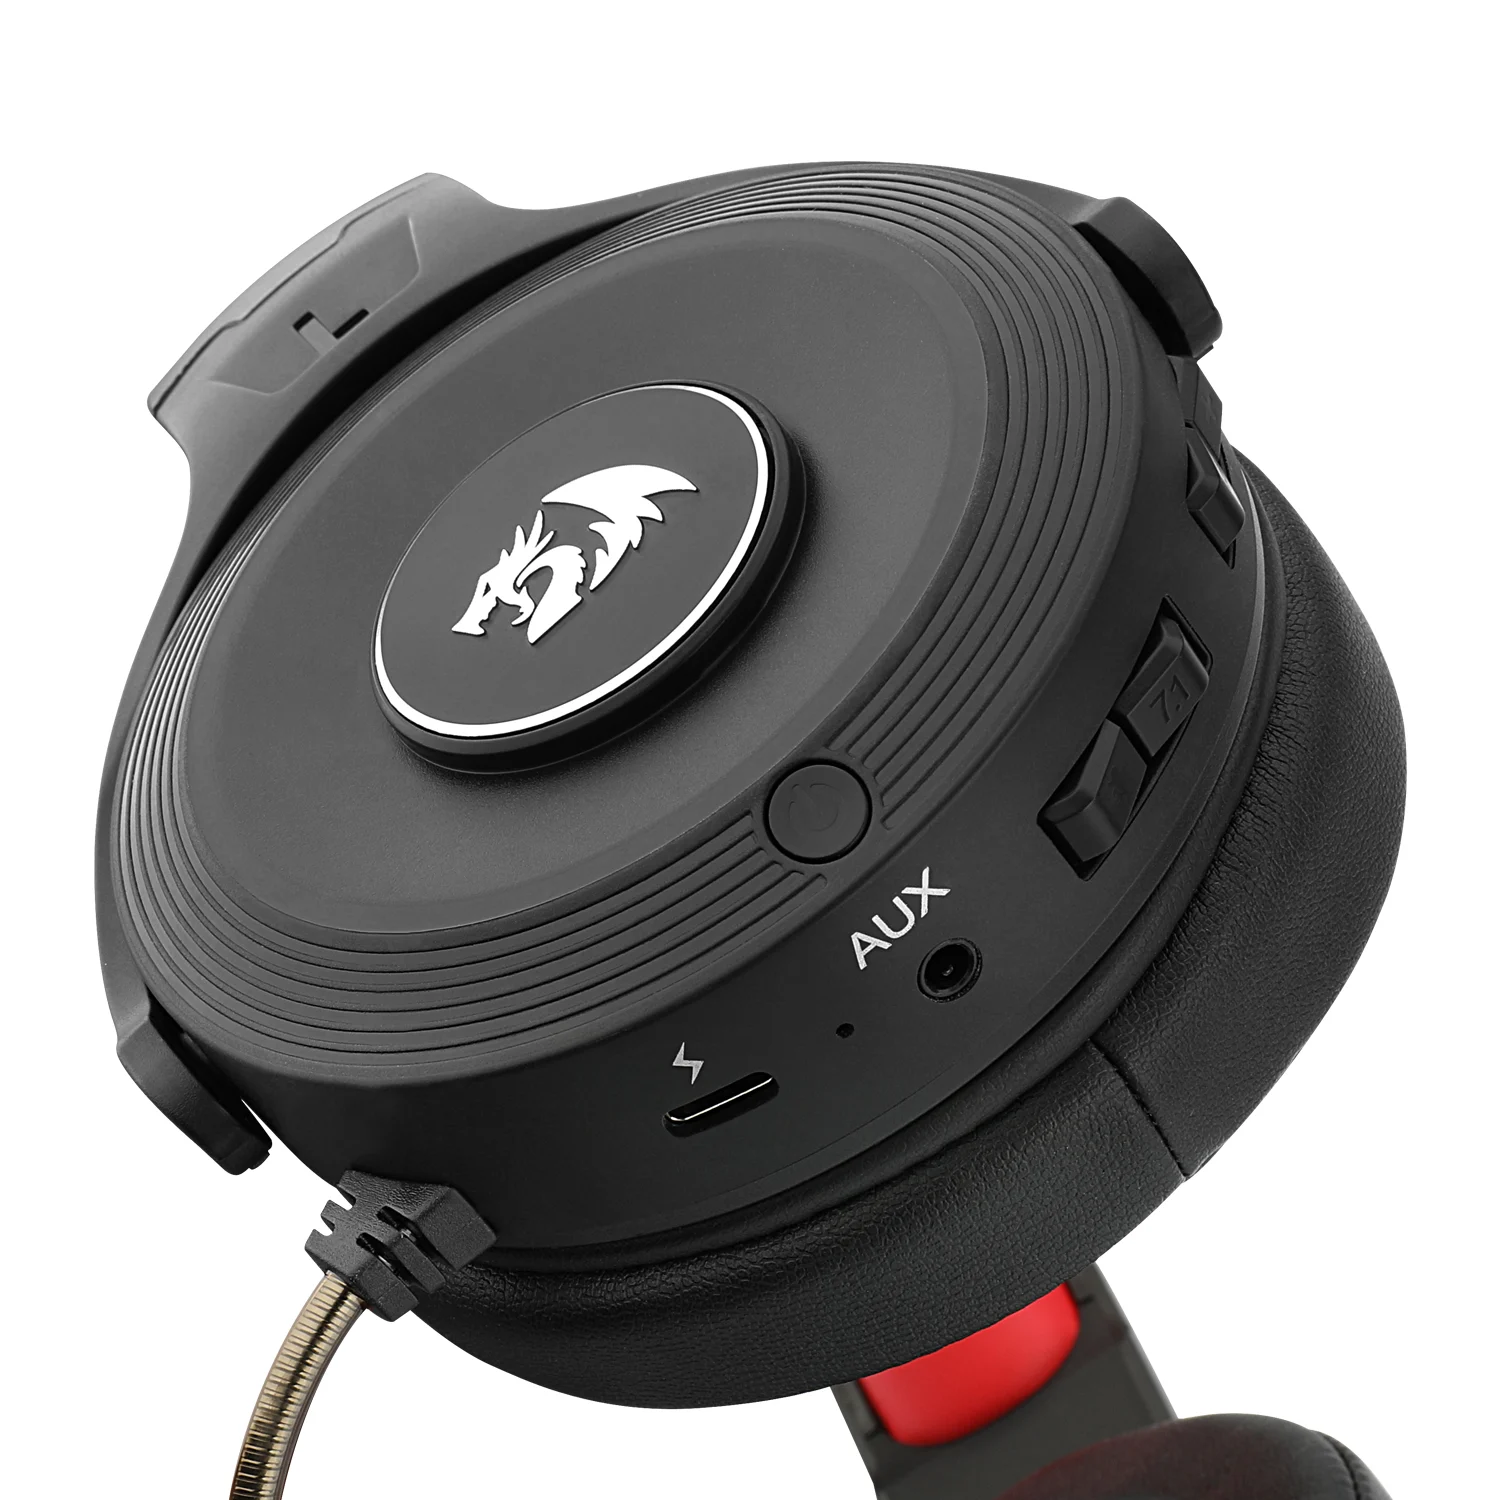 Headset Gamer Redragon Pelops H818 Wireless / C/Transmissor USB- Preto e Vermelho